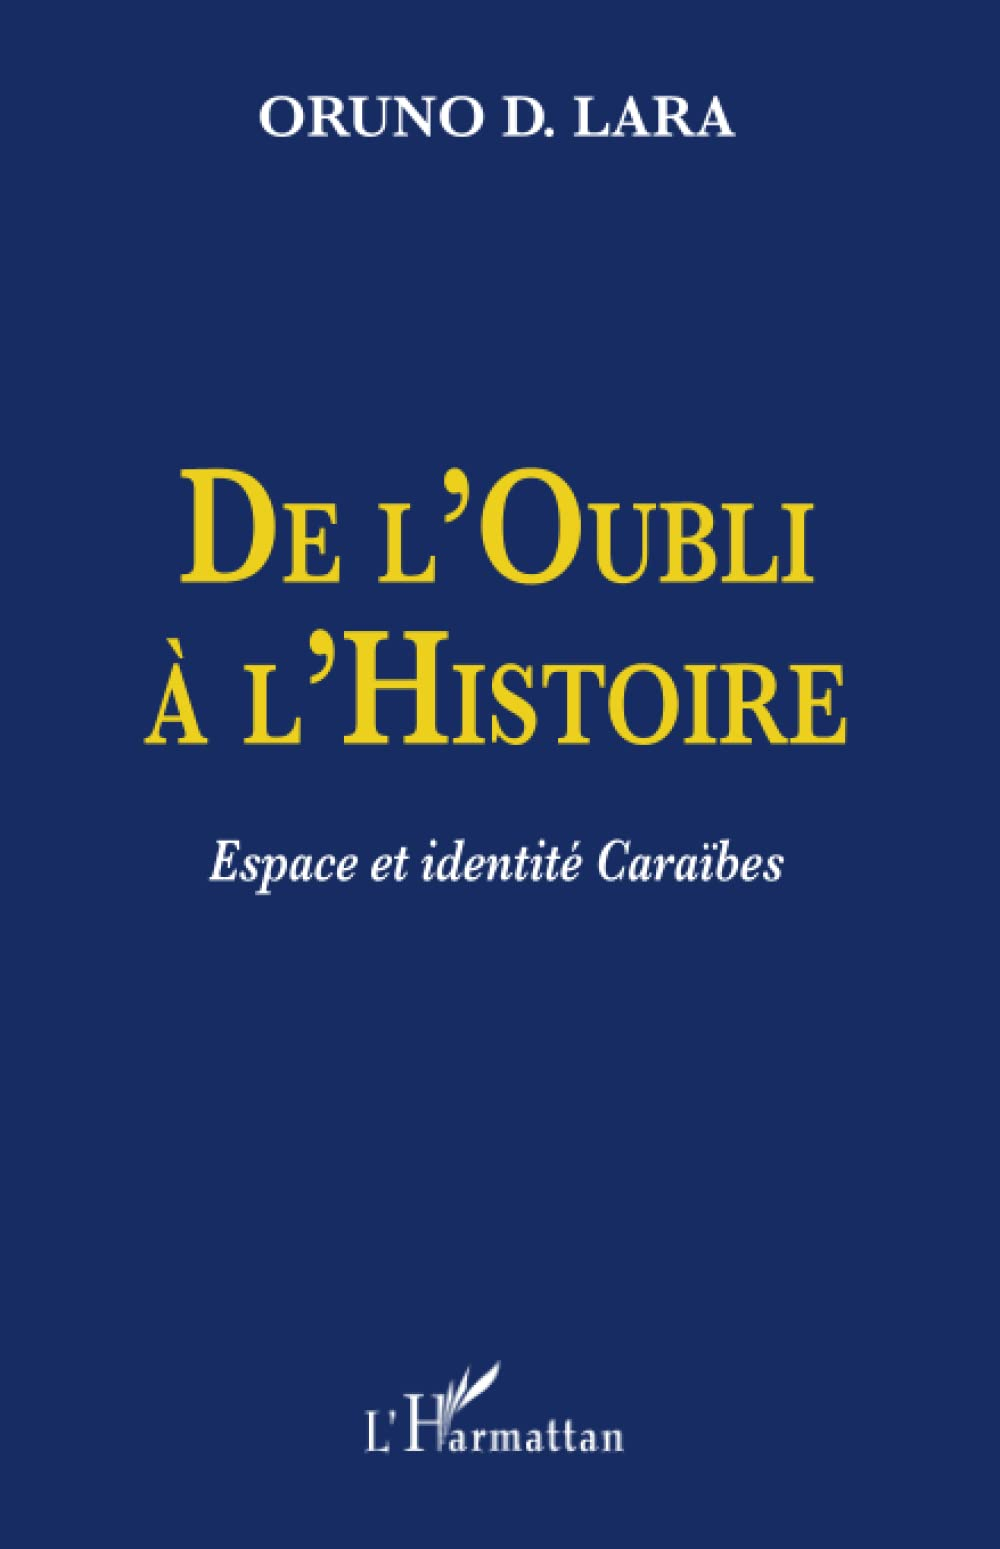 De l'oubli à l'histoire : espace et identité caraïbes : Guadeloupe, Guyane, Haïti, Martinique